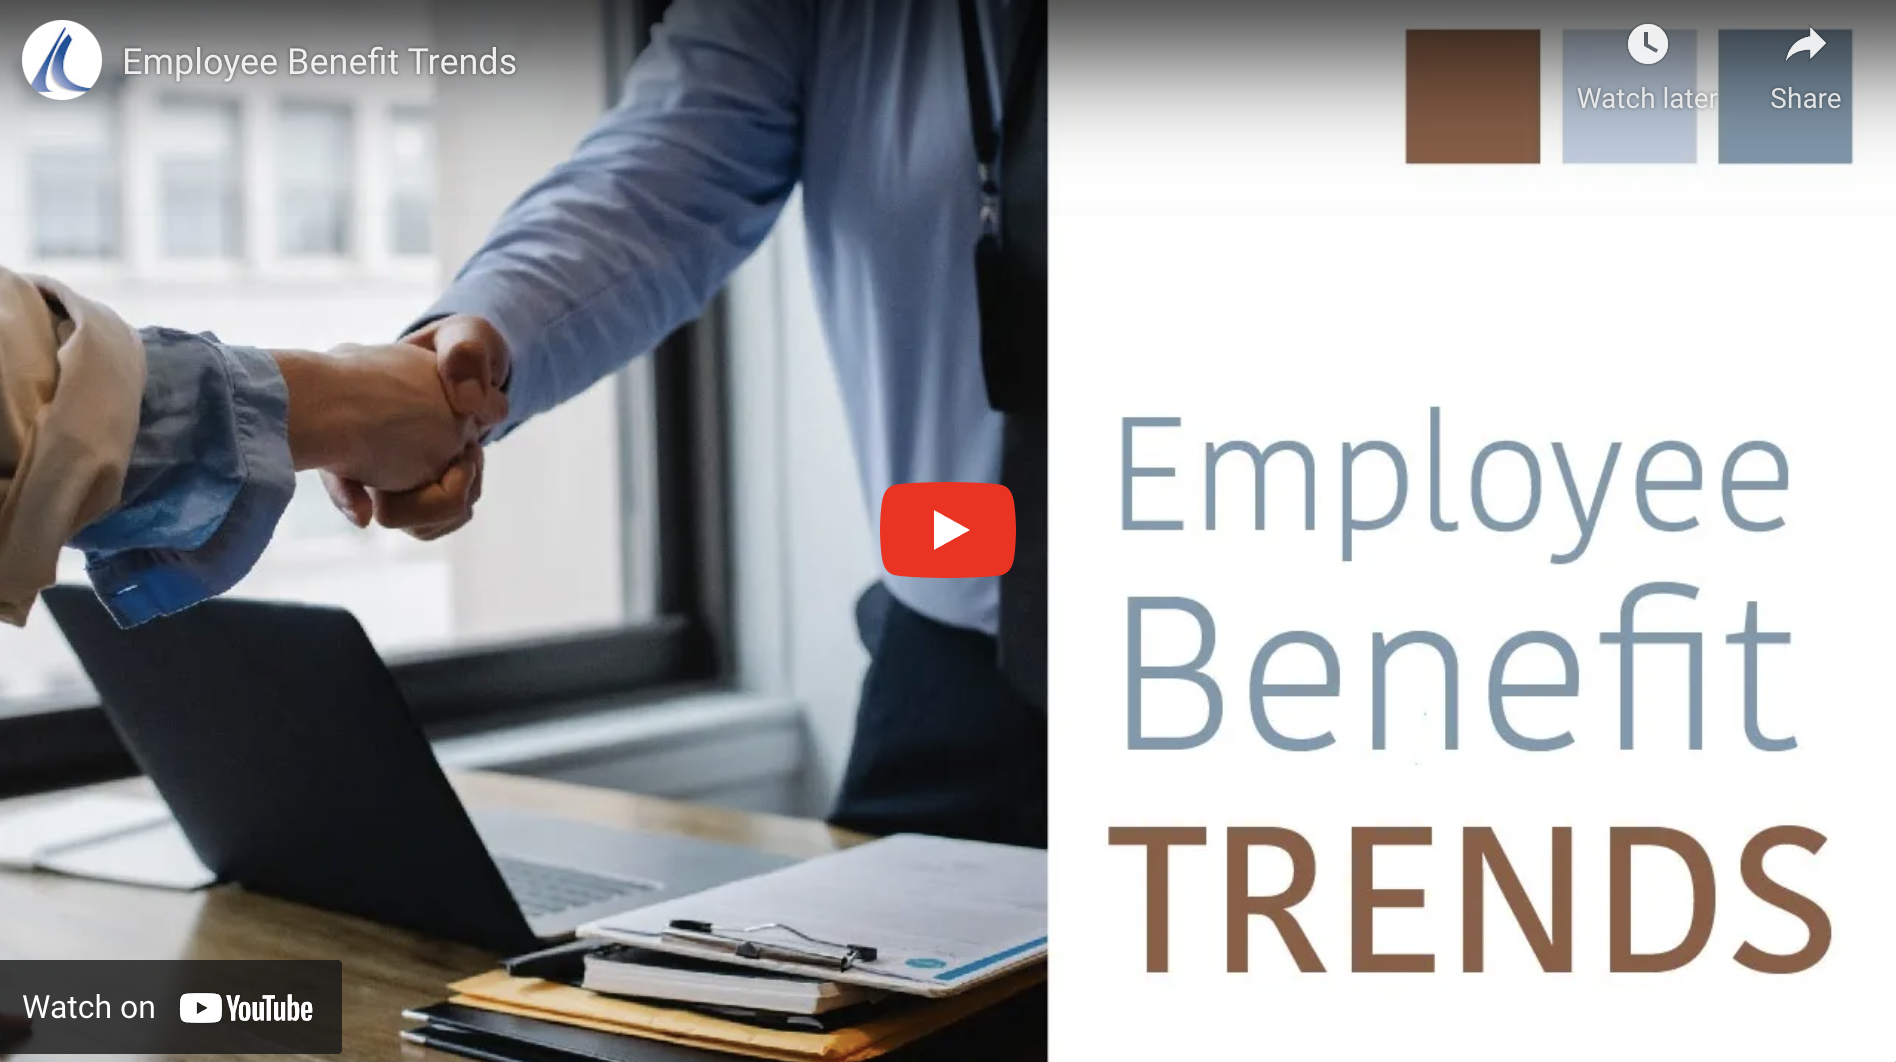 Employee Benefit Trends